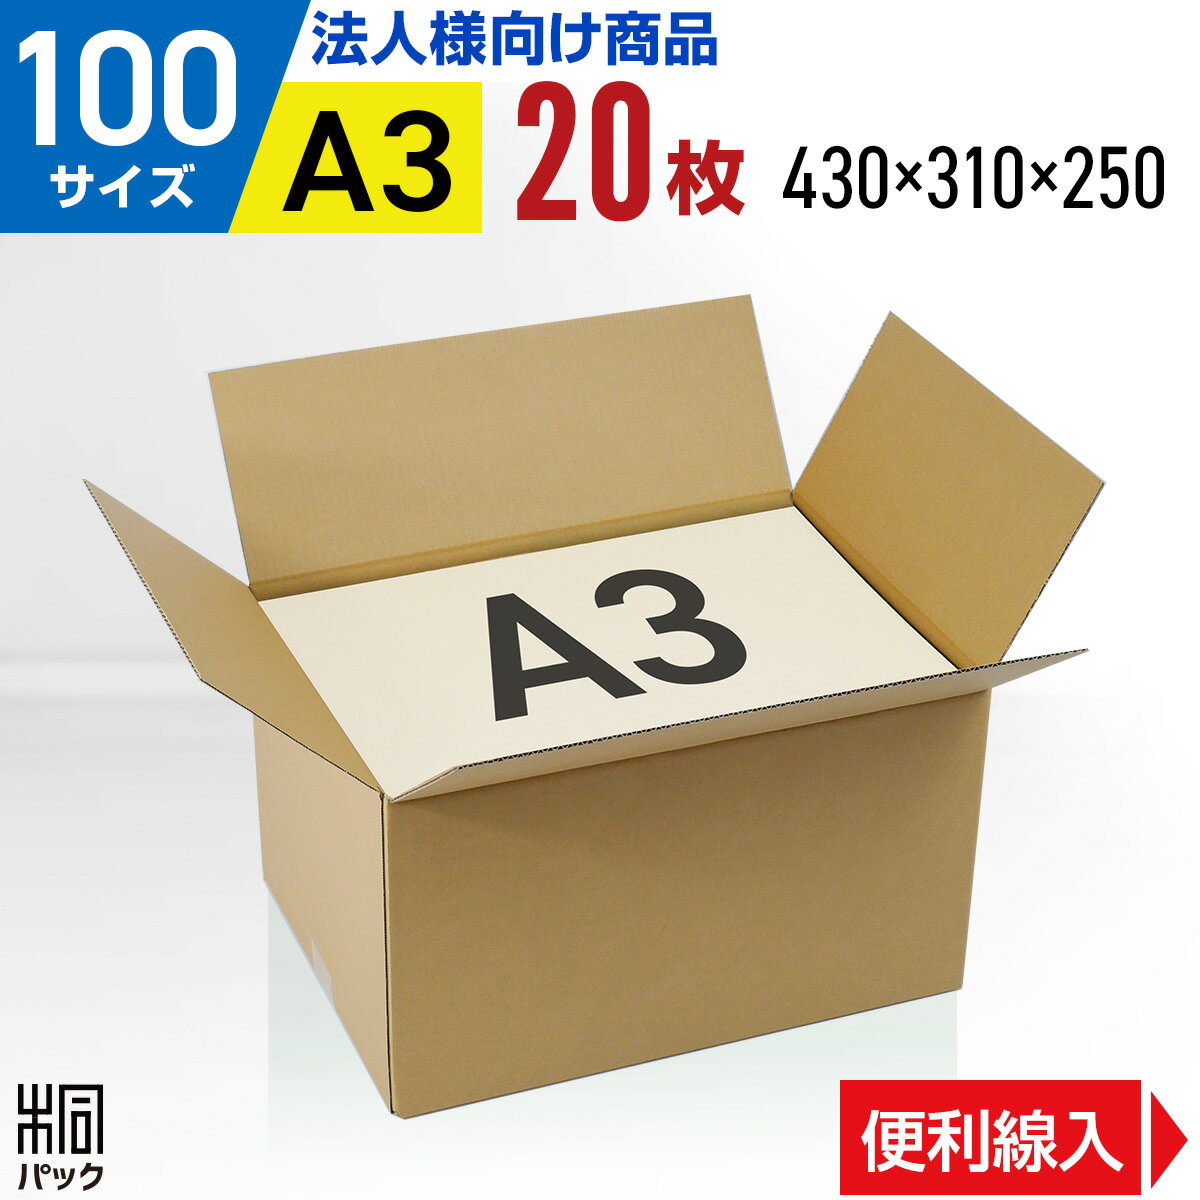 【法人特価】段ボール 箱 100サイズ A3 便利線入り 2